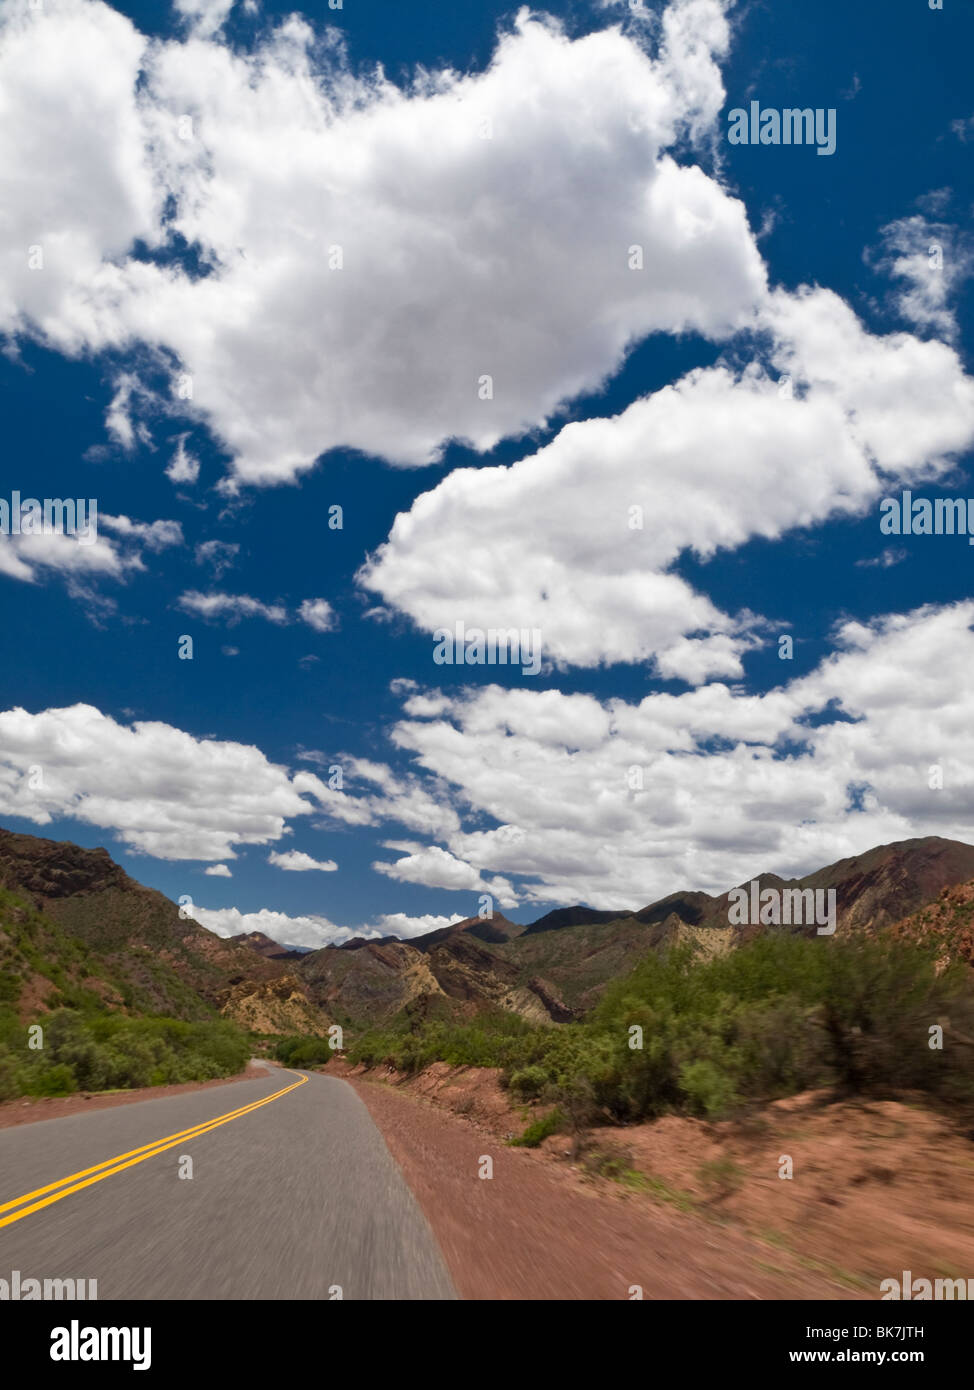 La guida su una strada attraverso un paesaggio di montagna. Foto Stock